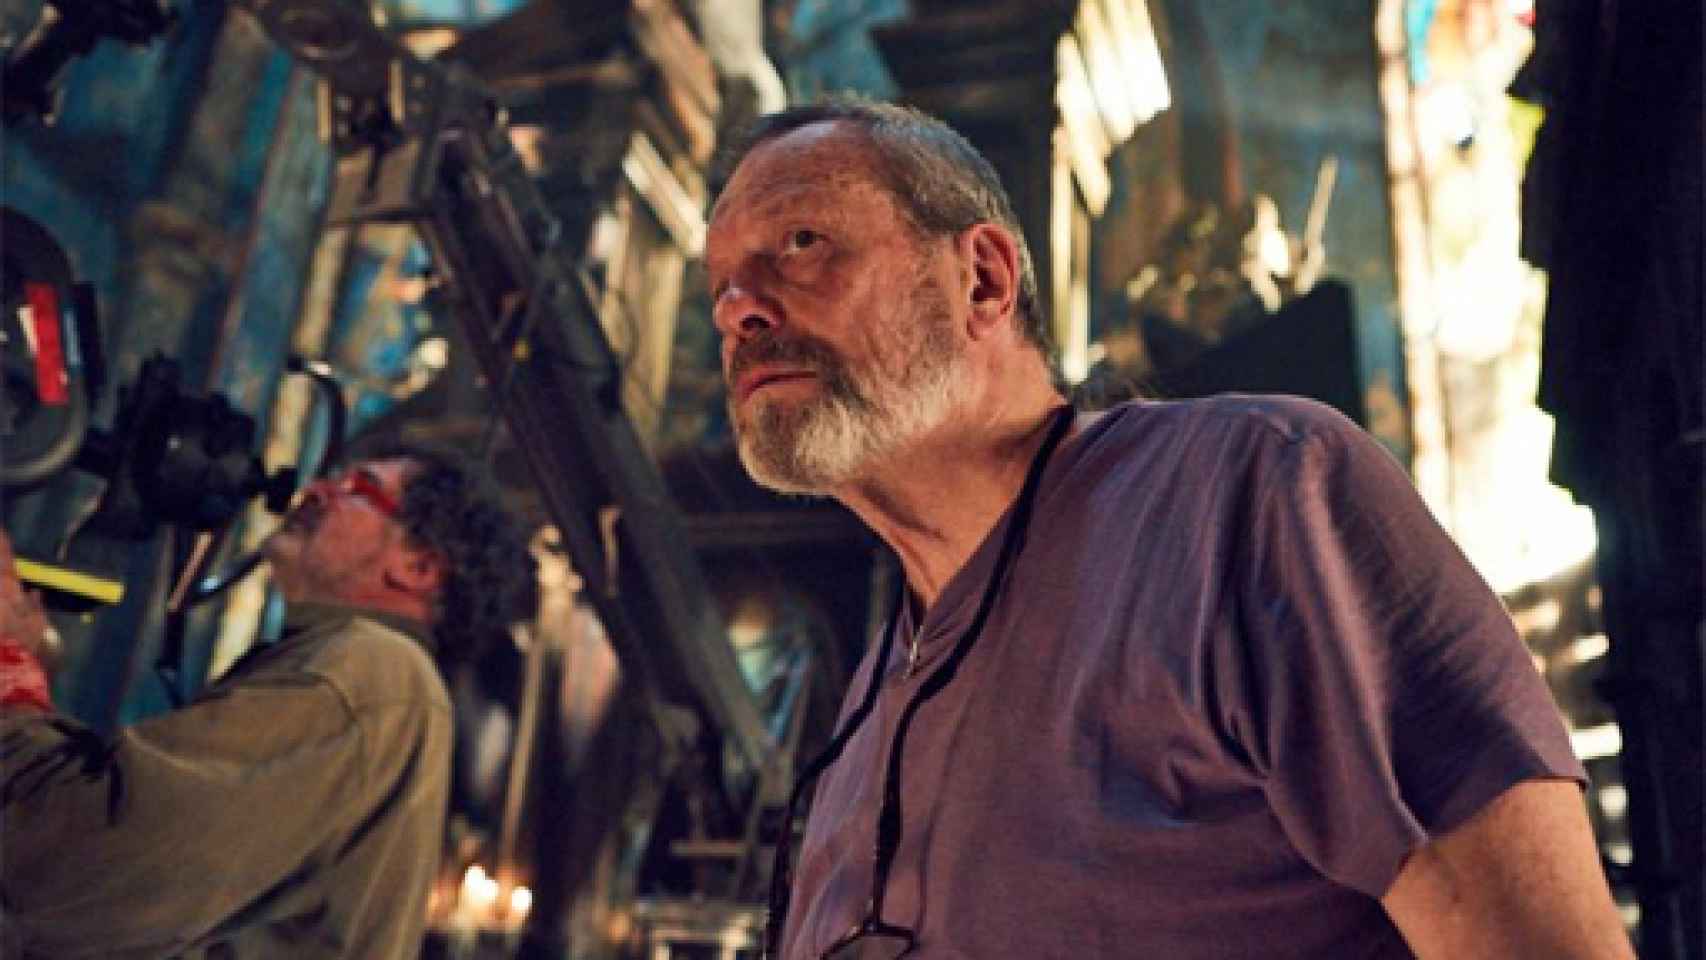 Image: Terry Gilliam: No sé hacer una película seria